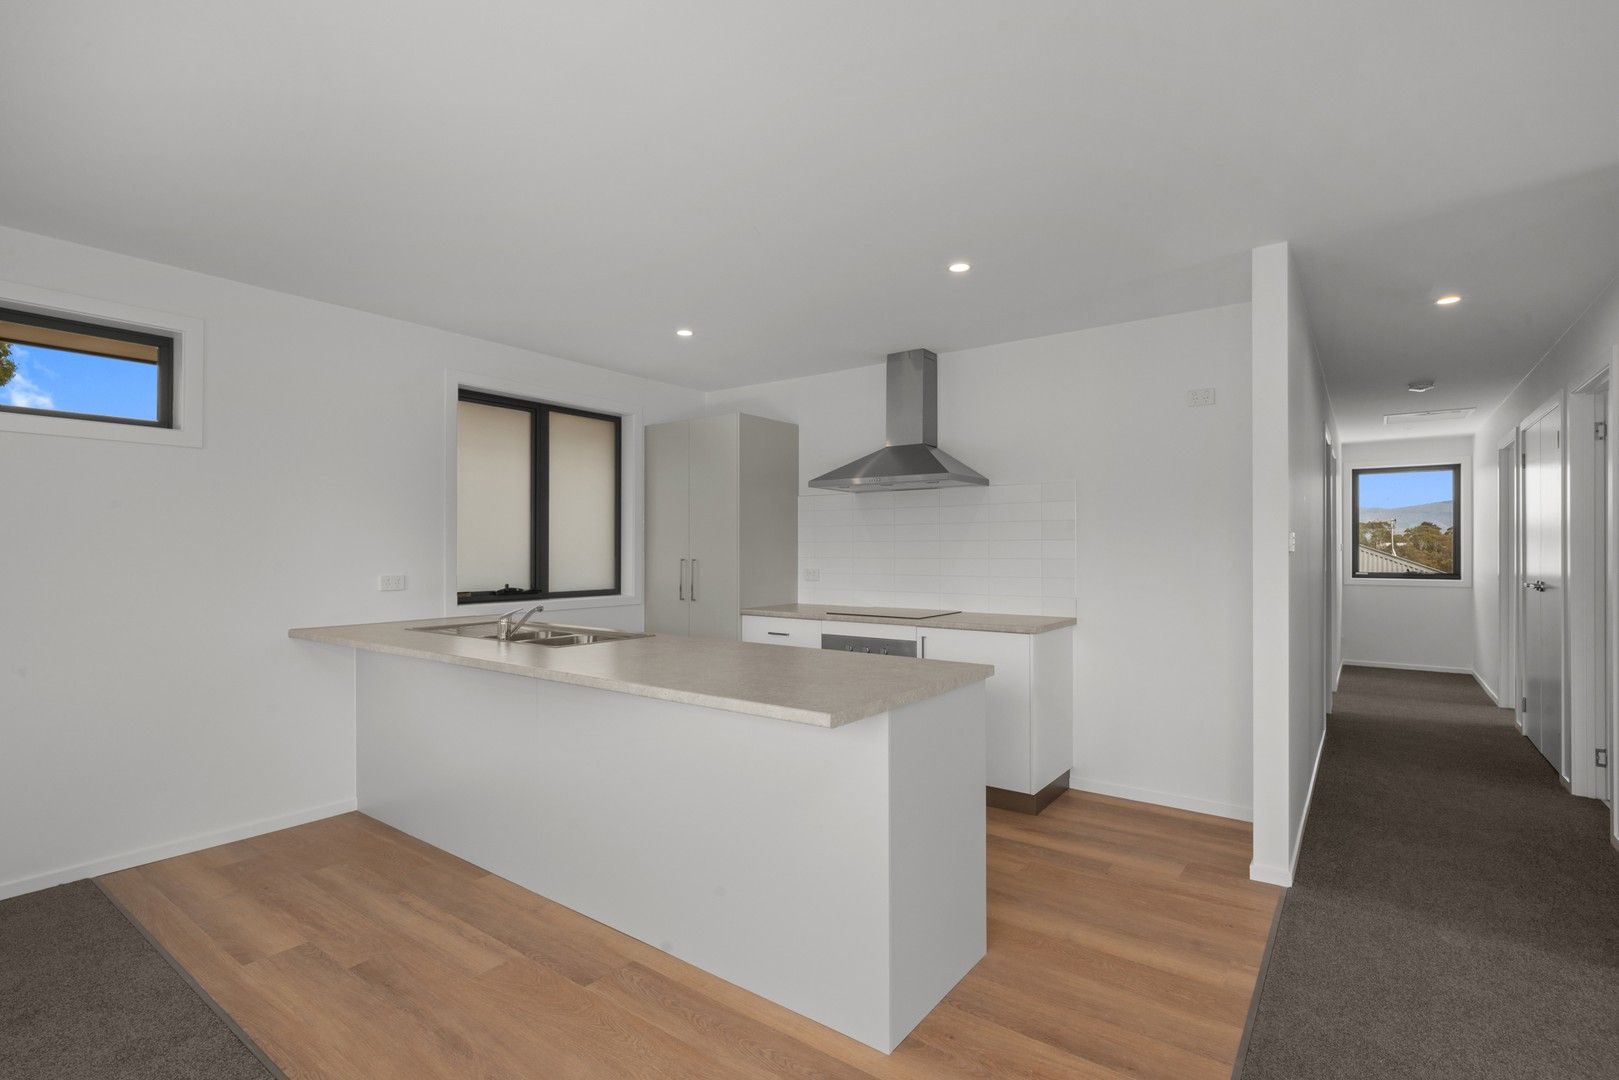 3 bedrooms Apartment / Unit / Flat in 2/14 Elpida Street RISDON VALE TAS, 7016